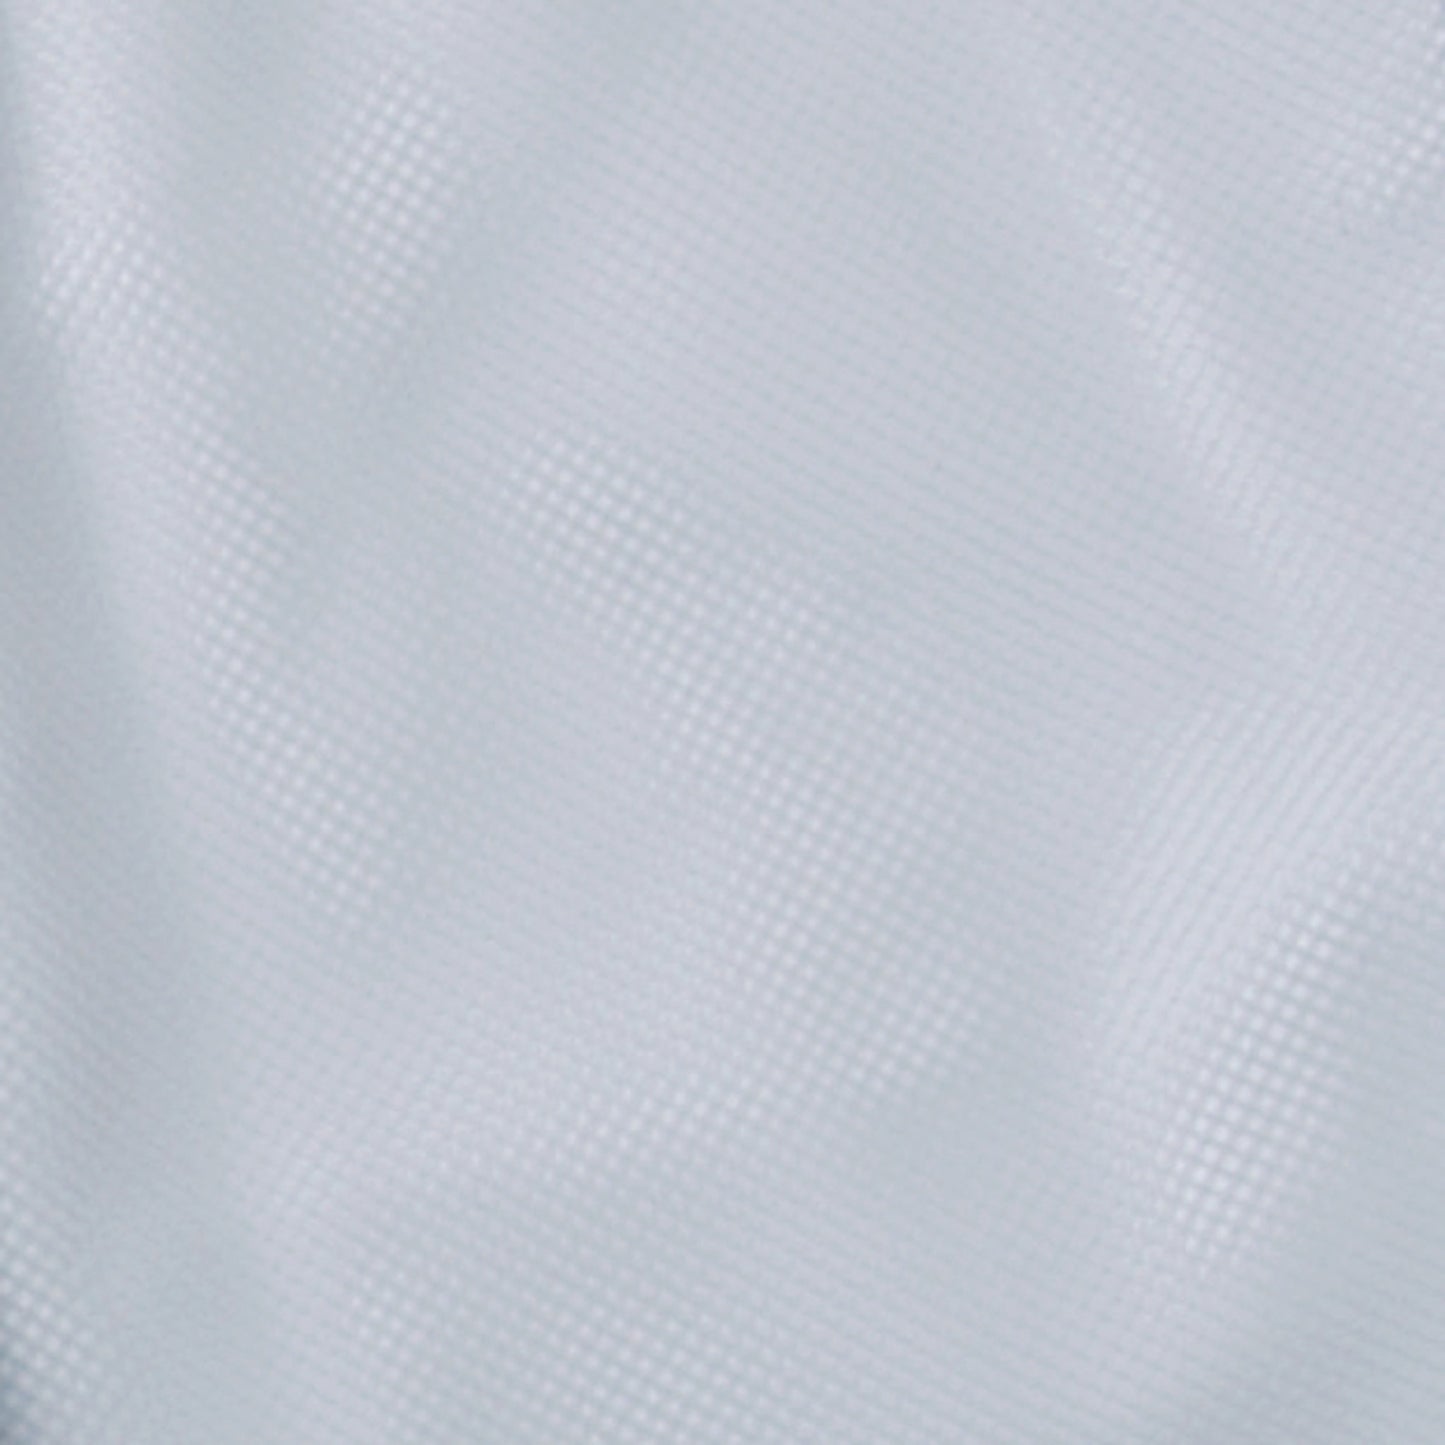 サンエス 食品工場用白衣 フードマイスター ウエストサイド ゴム仕様の衛生白衣 【女性用 横ゴム・裾口ジャージパンツ】 FX70958J